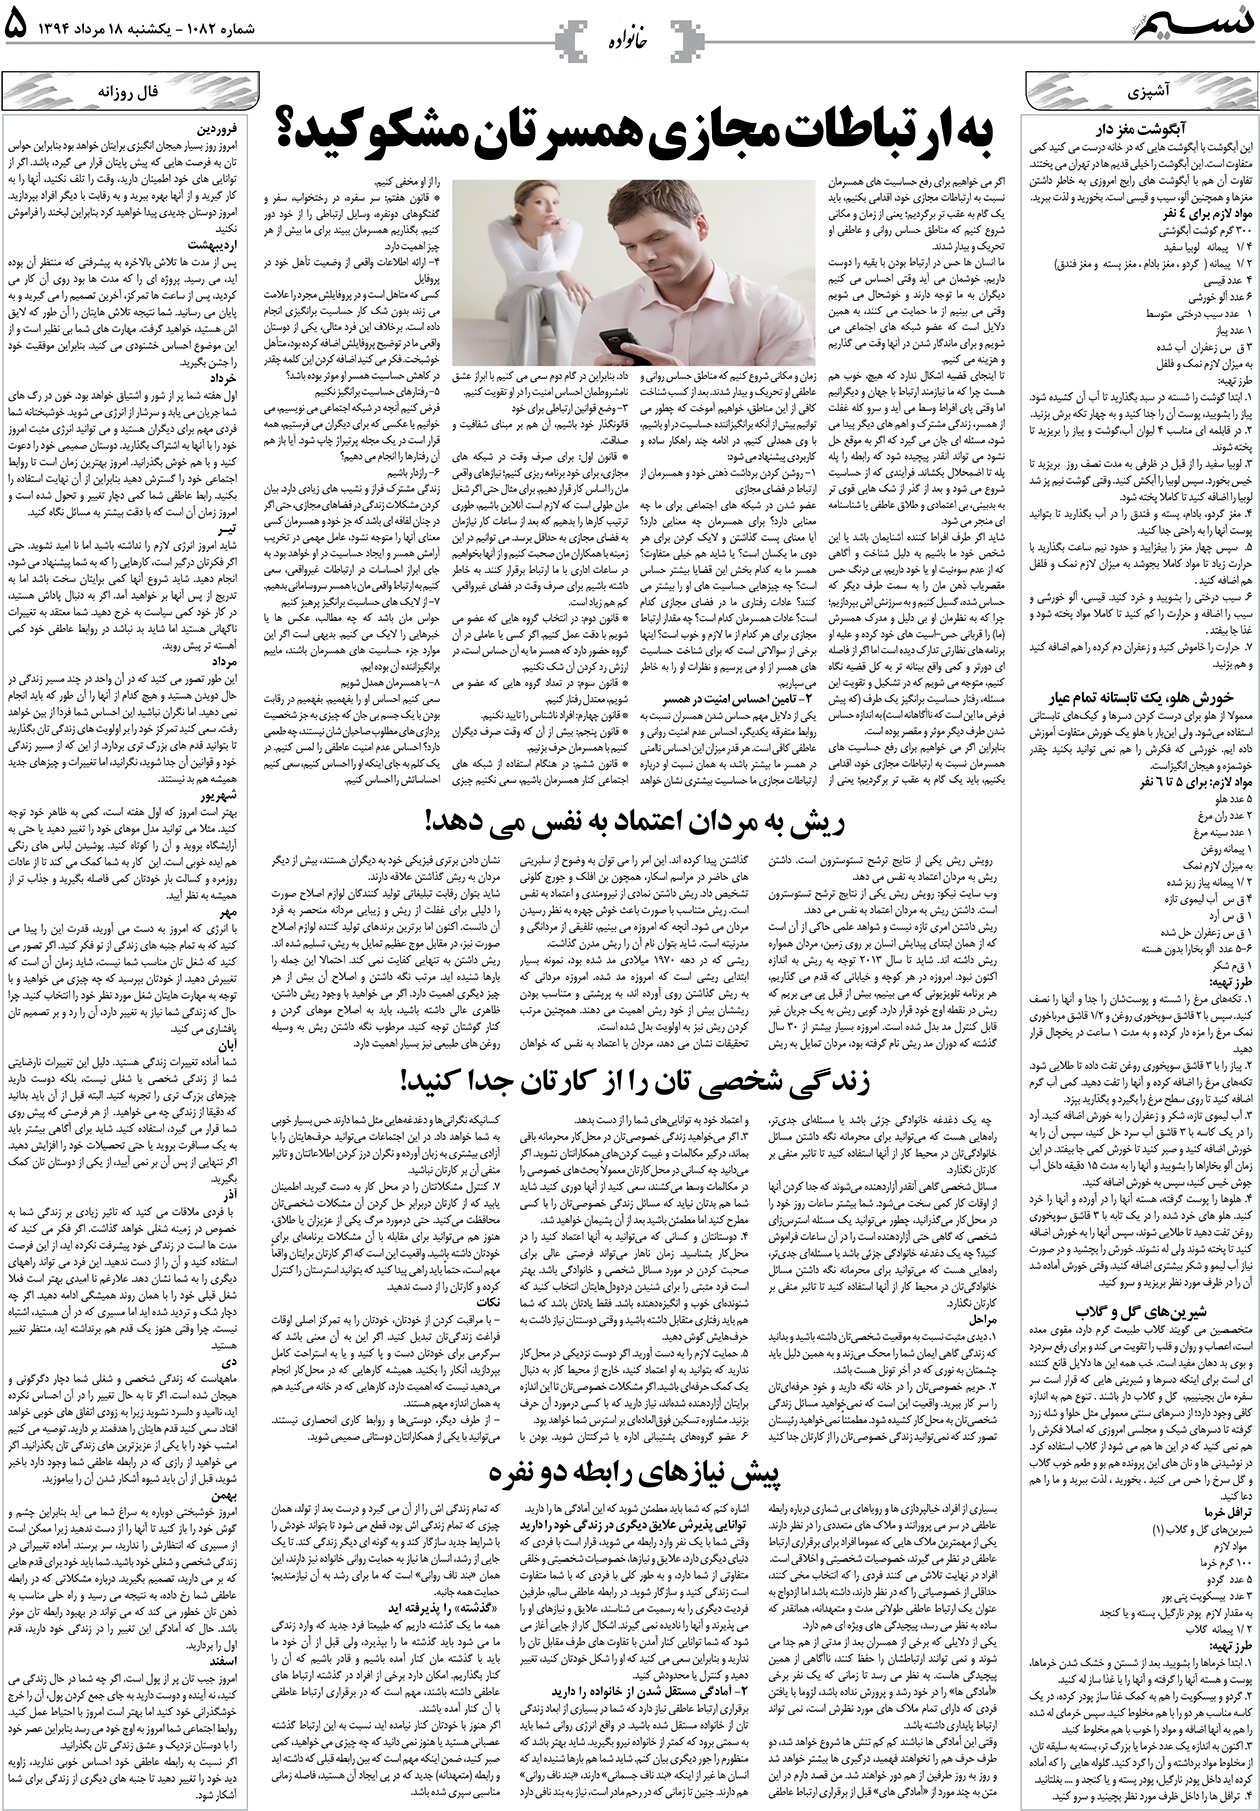 صفحه خانواده روزنامه نسیم شماره 1082